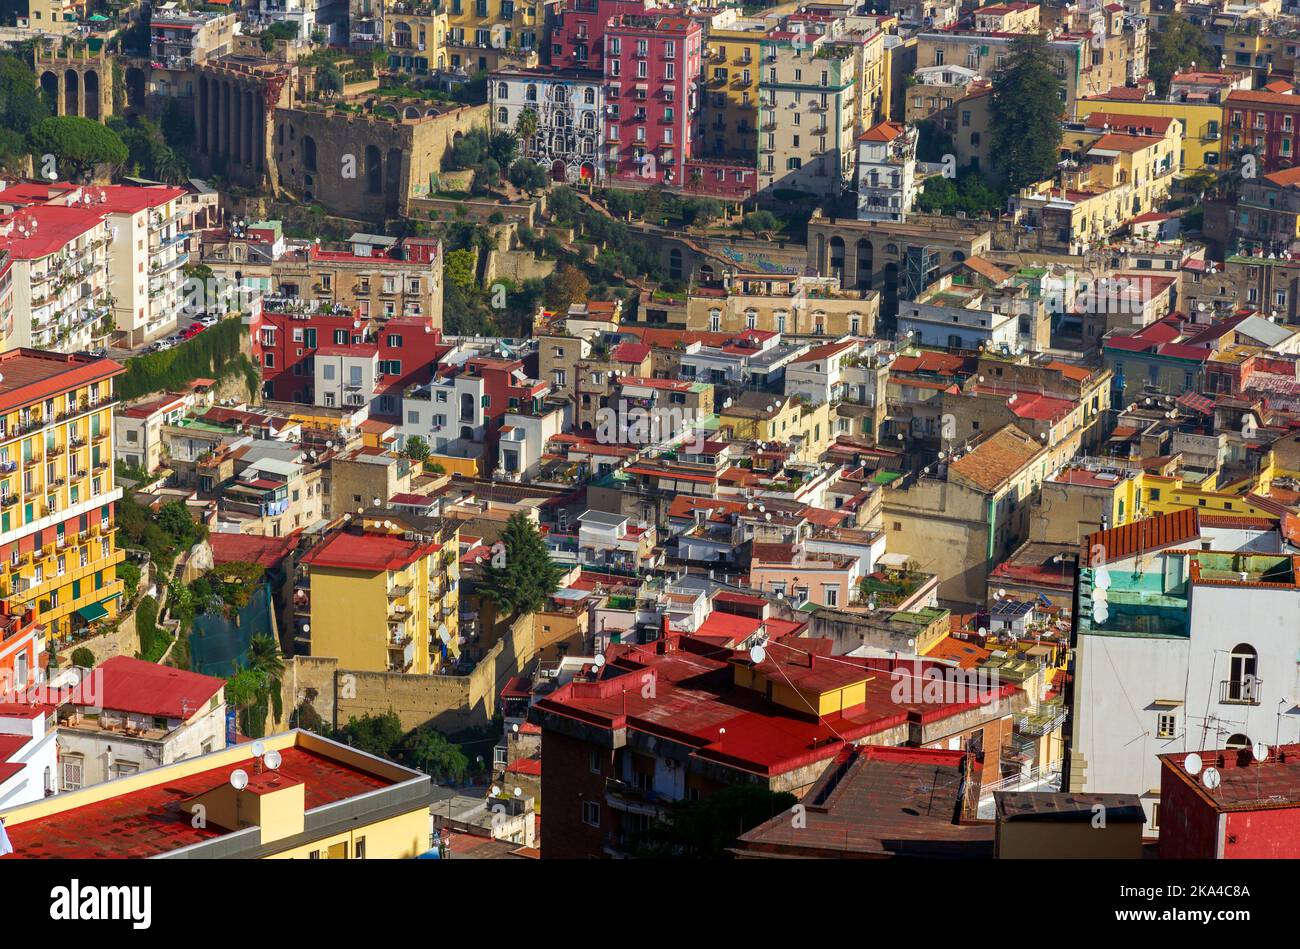 dense urban housing Naples Italy Stock Photo